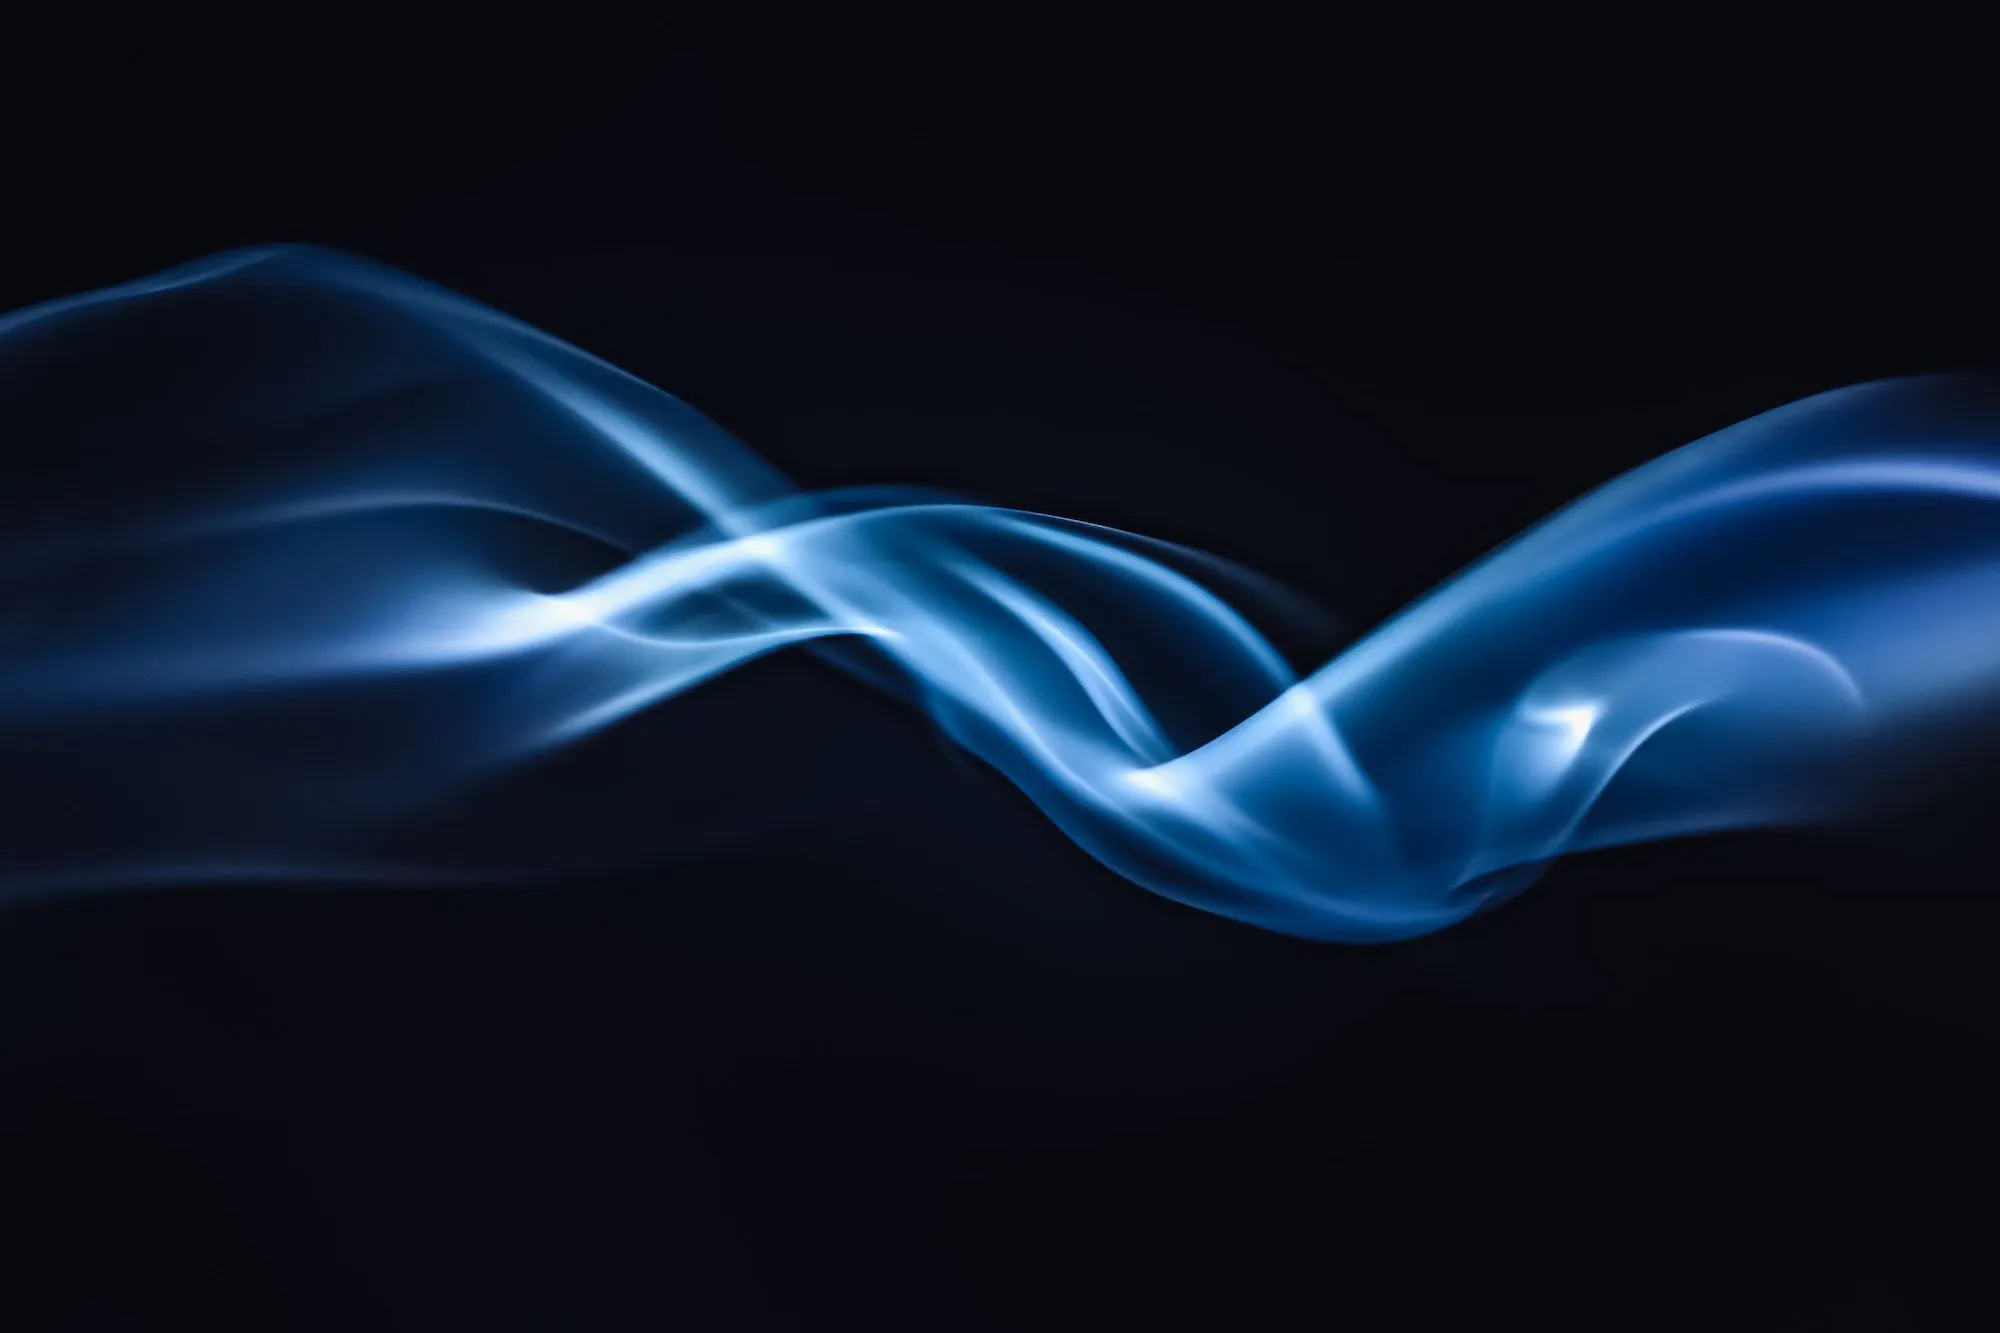 Photo of a blue ribbon of smoke